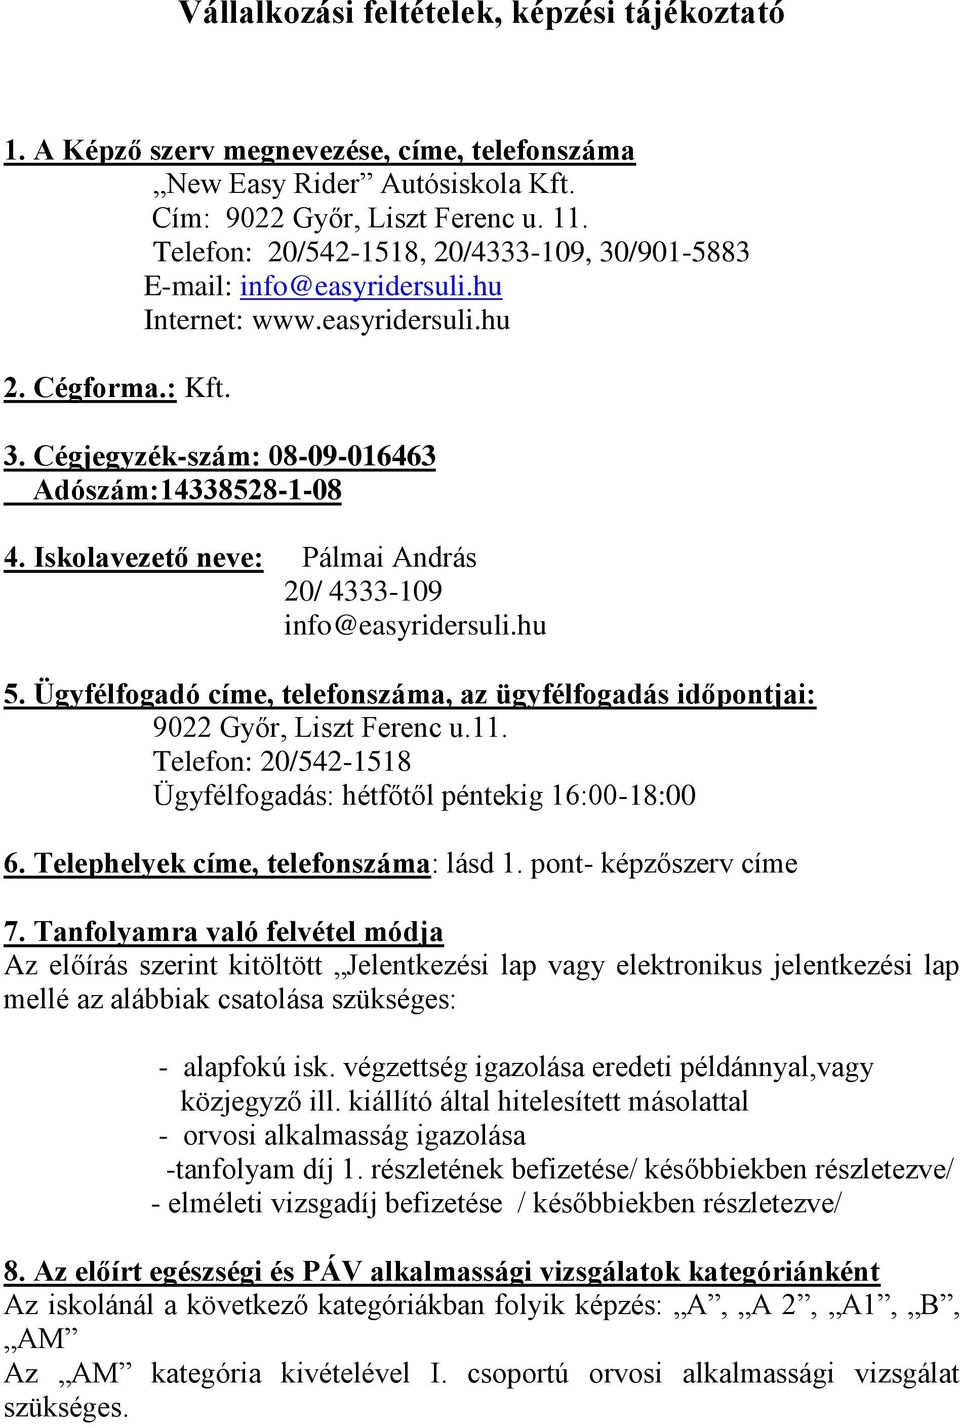 Iskolavezető neve: Pálmai András 20/ 4333-109 info@easyridersuli.hu 5. Ügyfélfogadó címe, telefonszáma, az ügyfélfogadás időpontjai: 9022 Győr, Liszt Ferenc u.11.